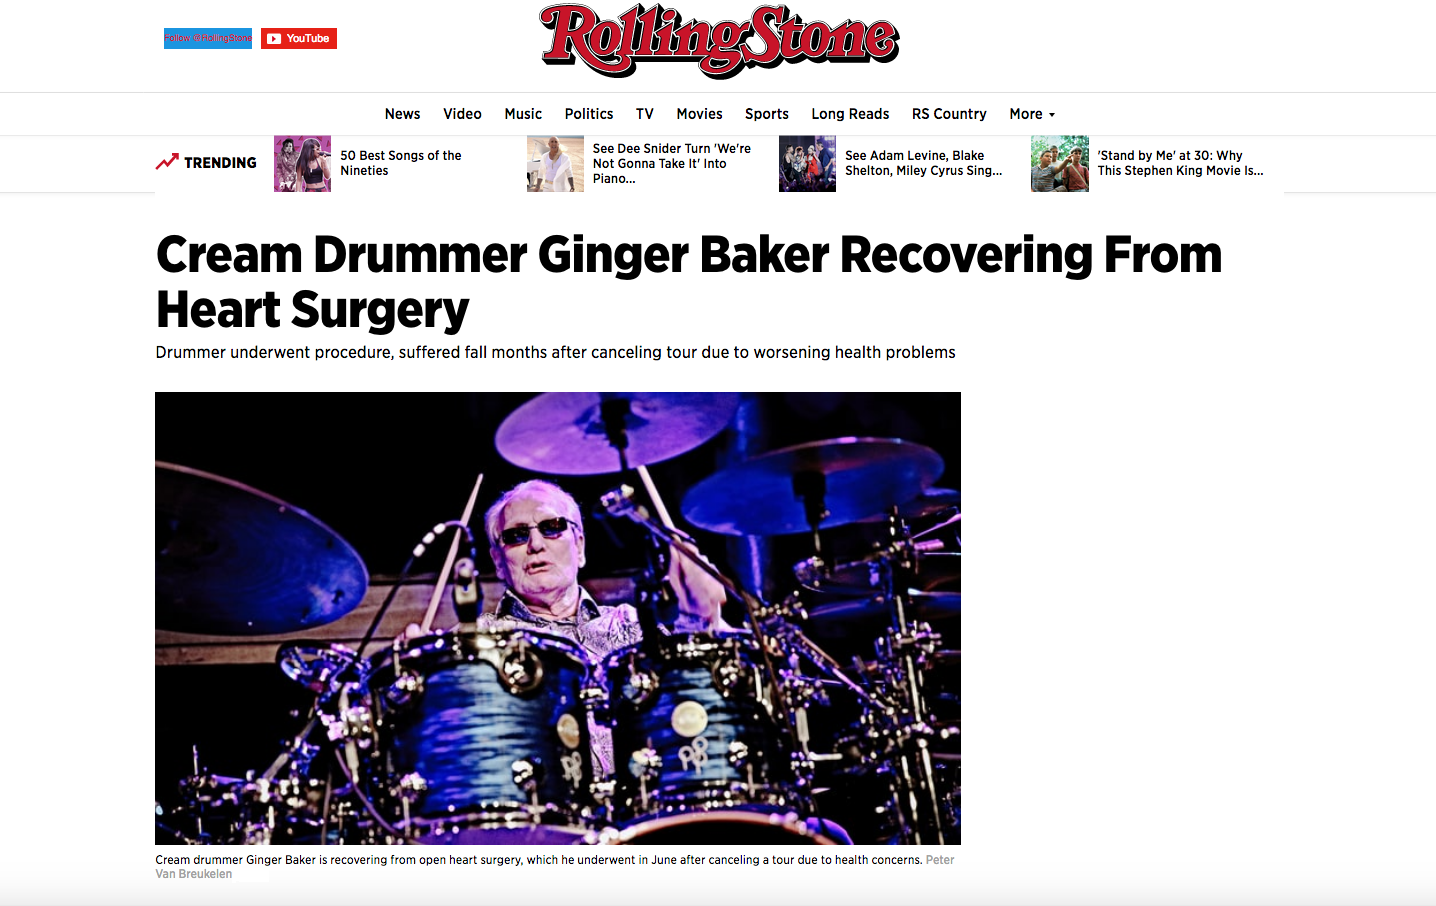  Ginger Baker for Rolling Stone. 